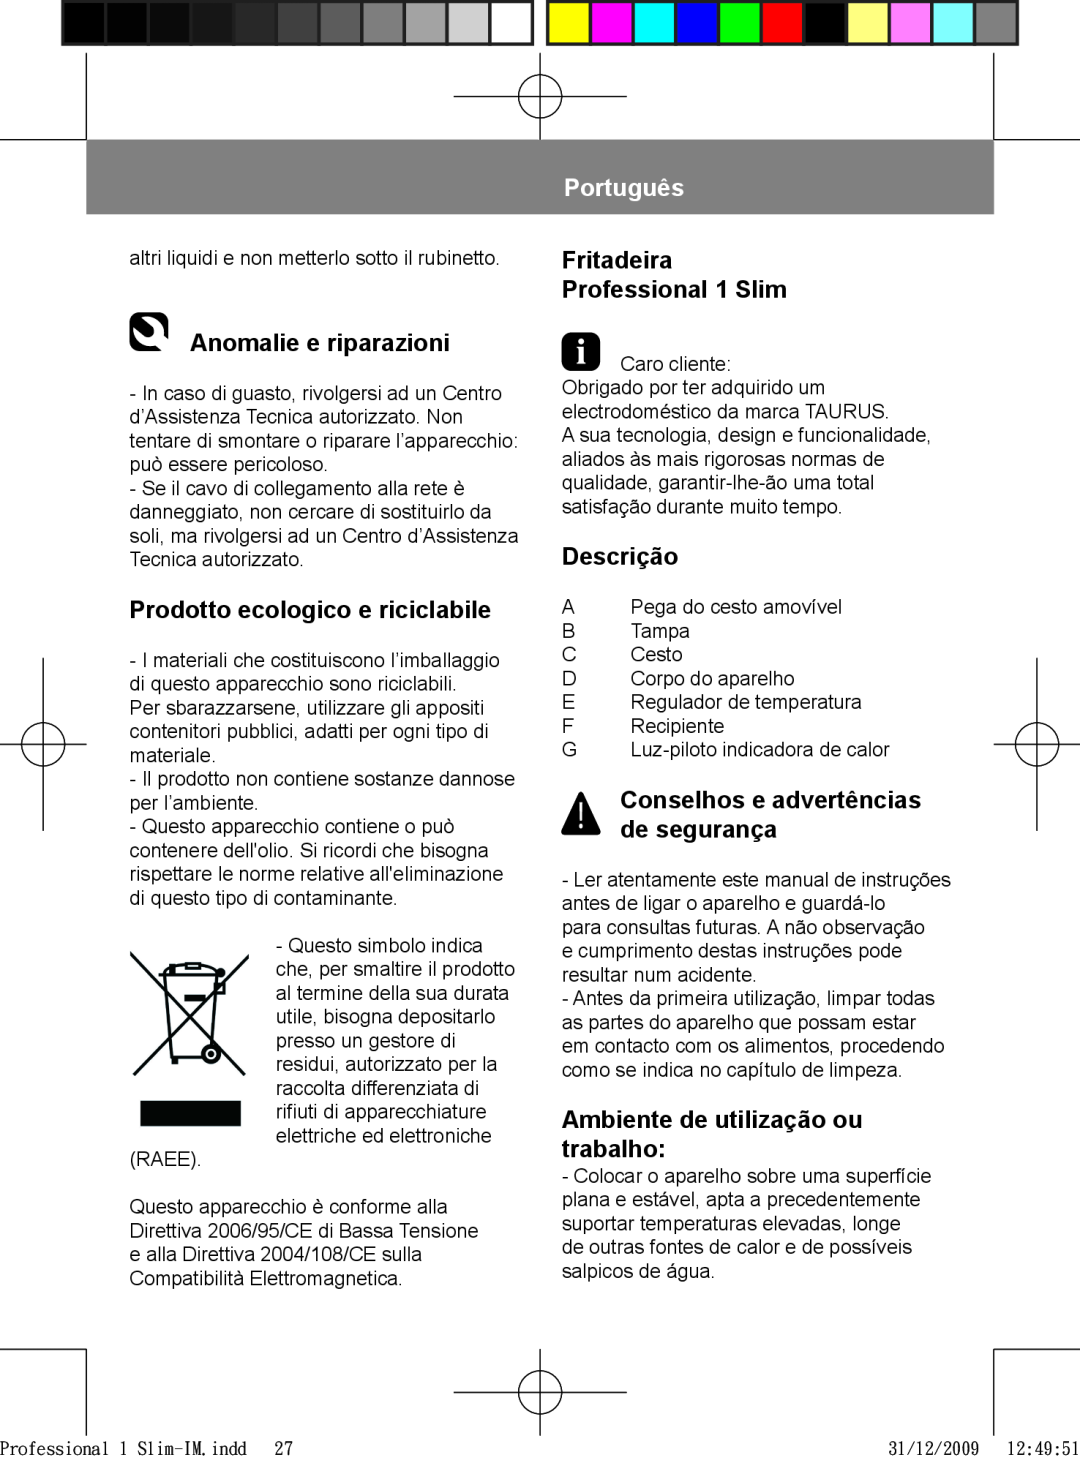 Taurus Group manual Anomalie e riparazioni, Prodotto ecologico e riciclabile, Português, Fritadeira Professional 1 Slim 